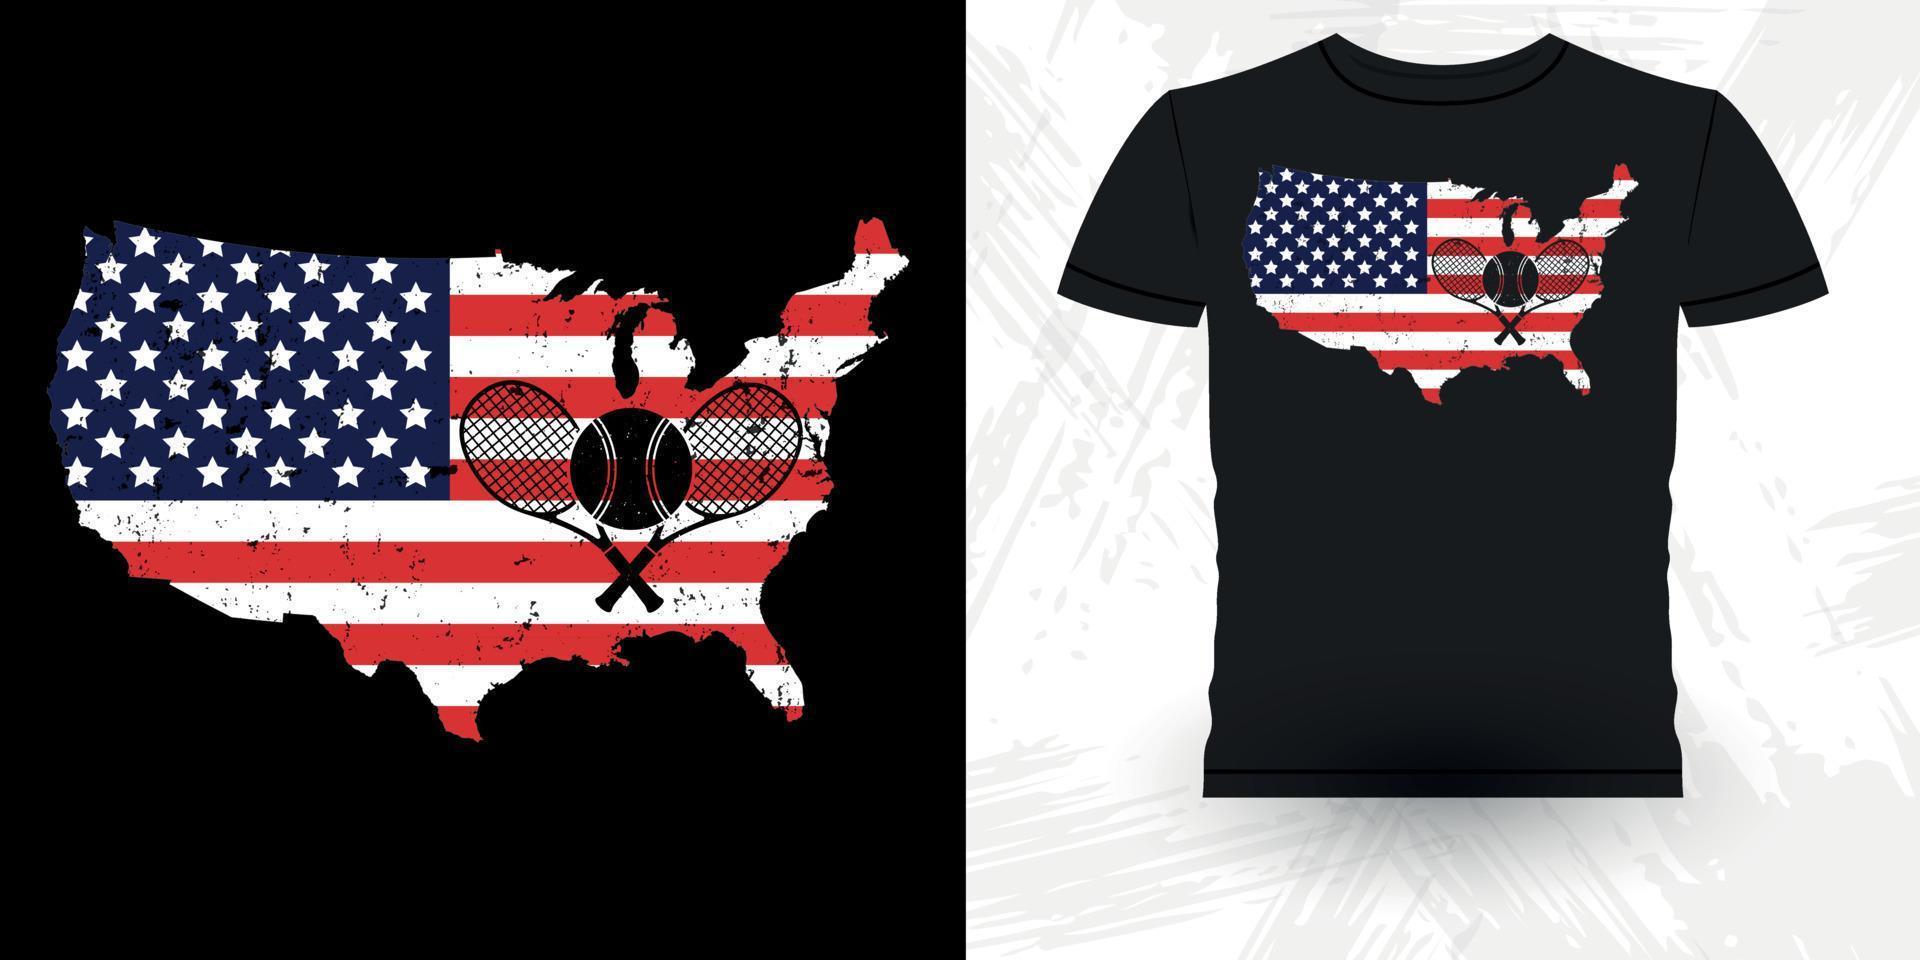 bandera americana jugador de tenis profesional divertido diseño de camiseta de tenis vintage retro divertido vector